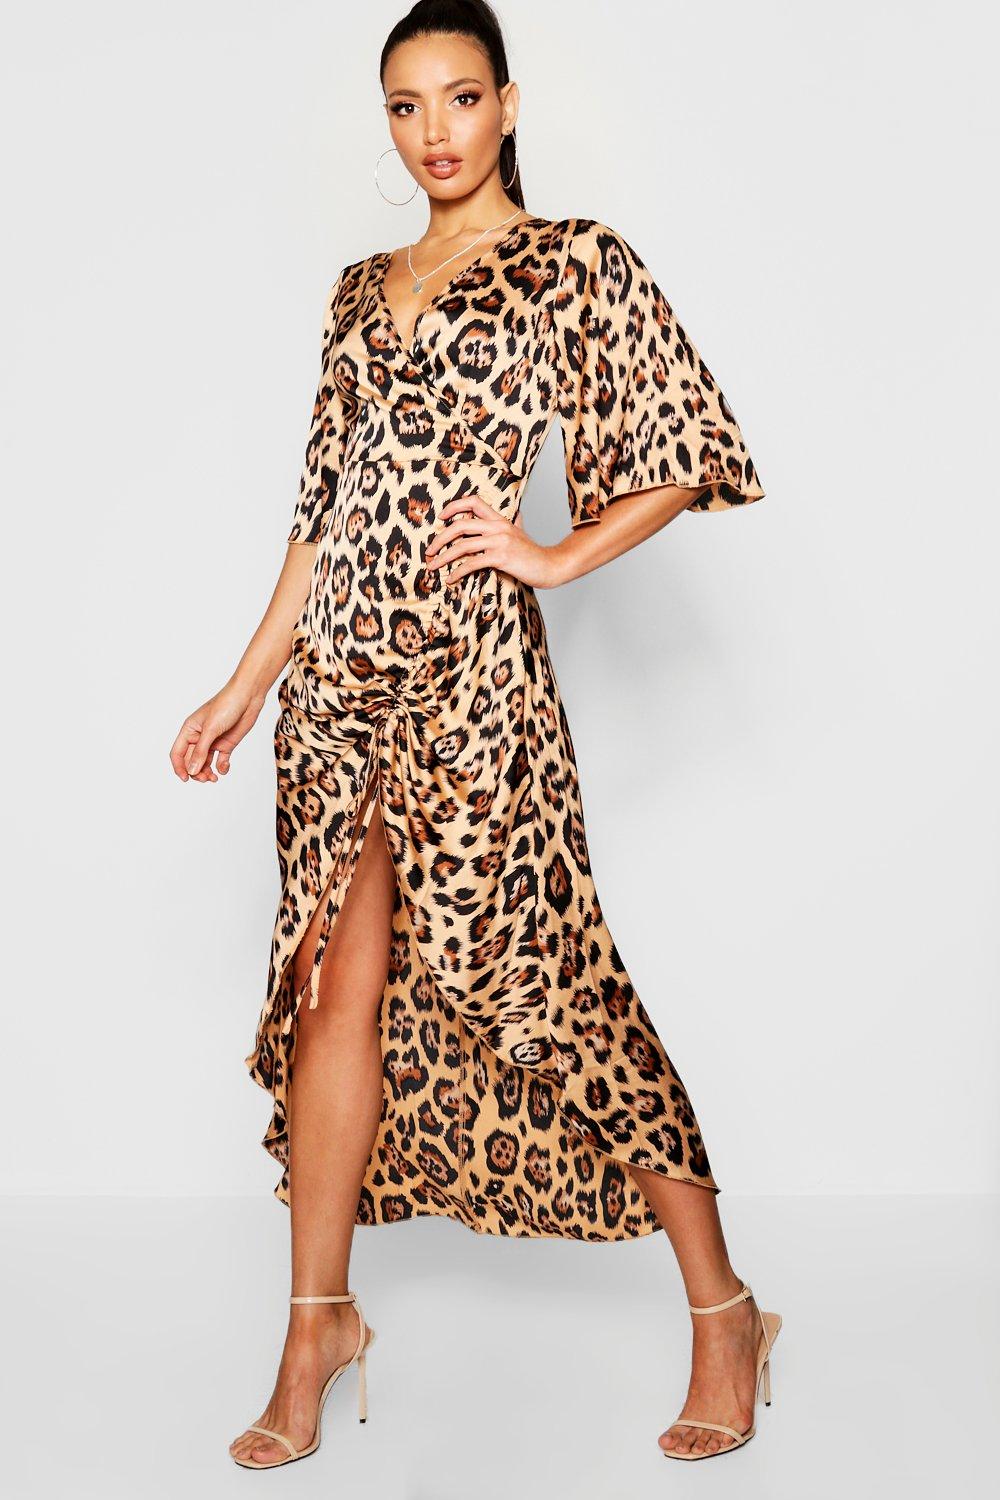 Леопардовое платье лав Репаблик